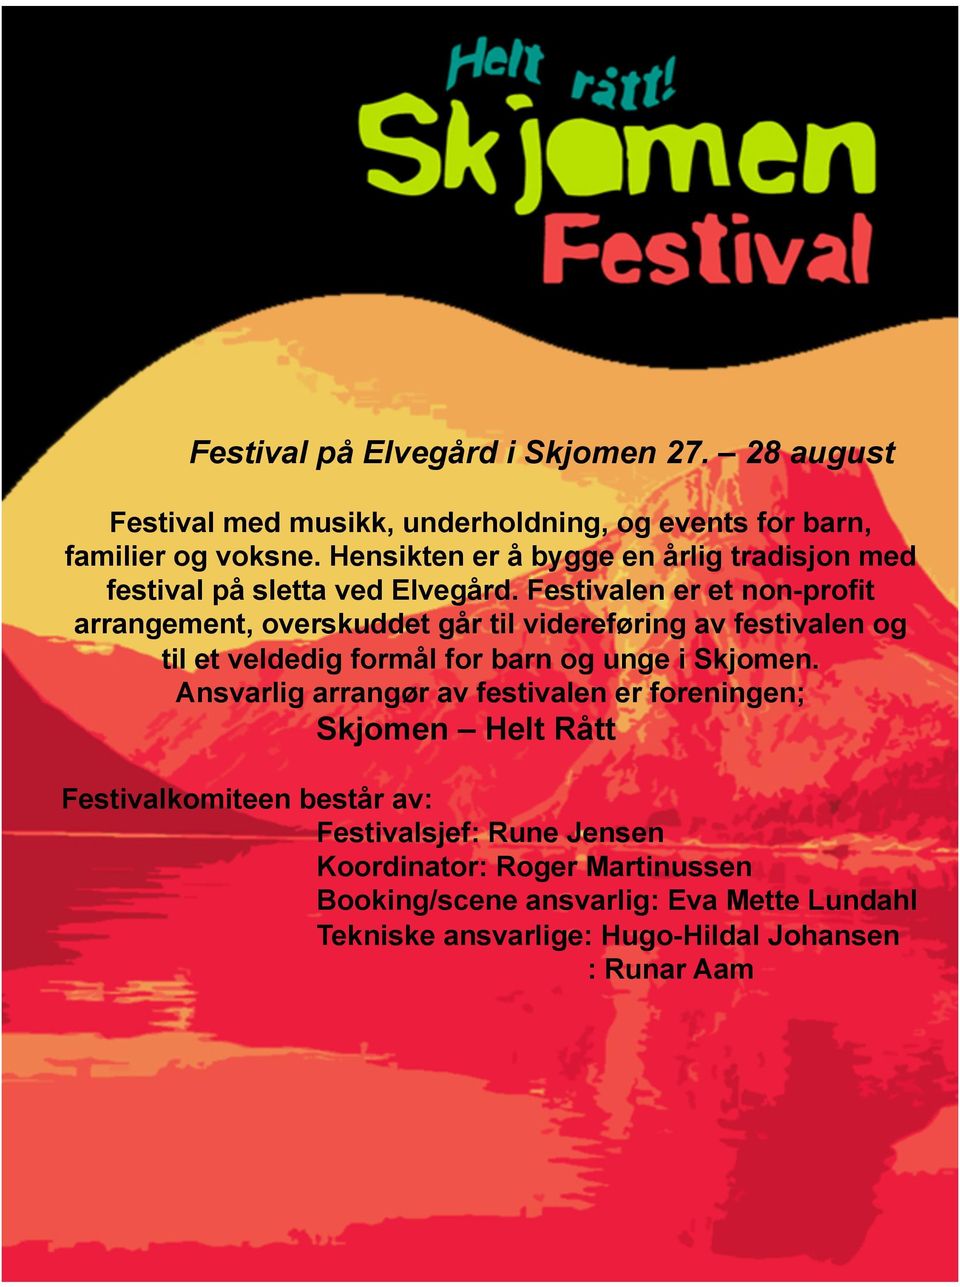 Festivalen er et non-profit arrangement, overskuddet går til videreføring av festivalen og til et veldedig formål for barn og unge i Skjomen.